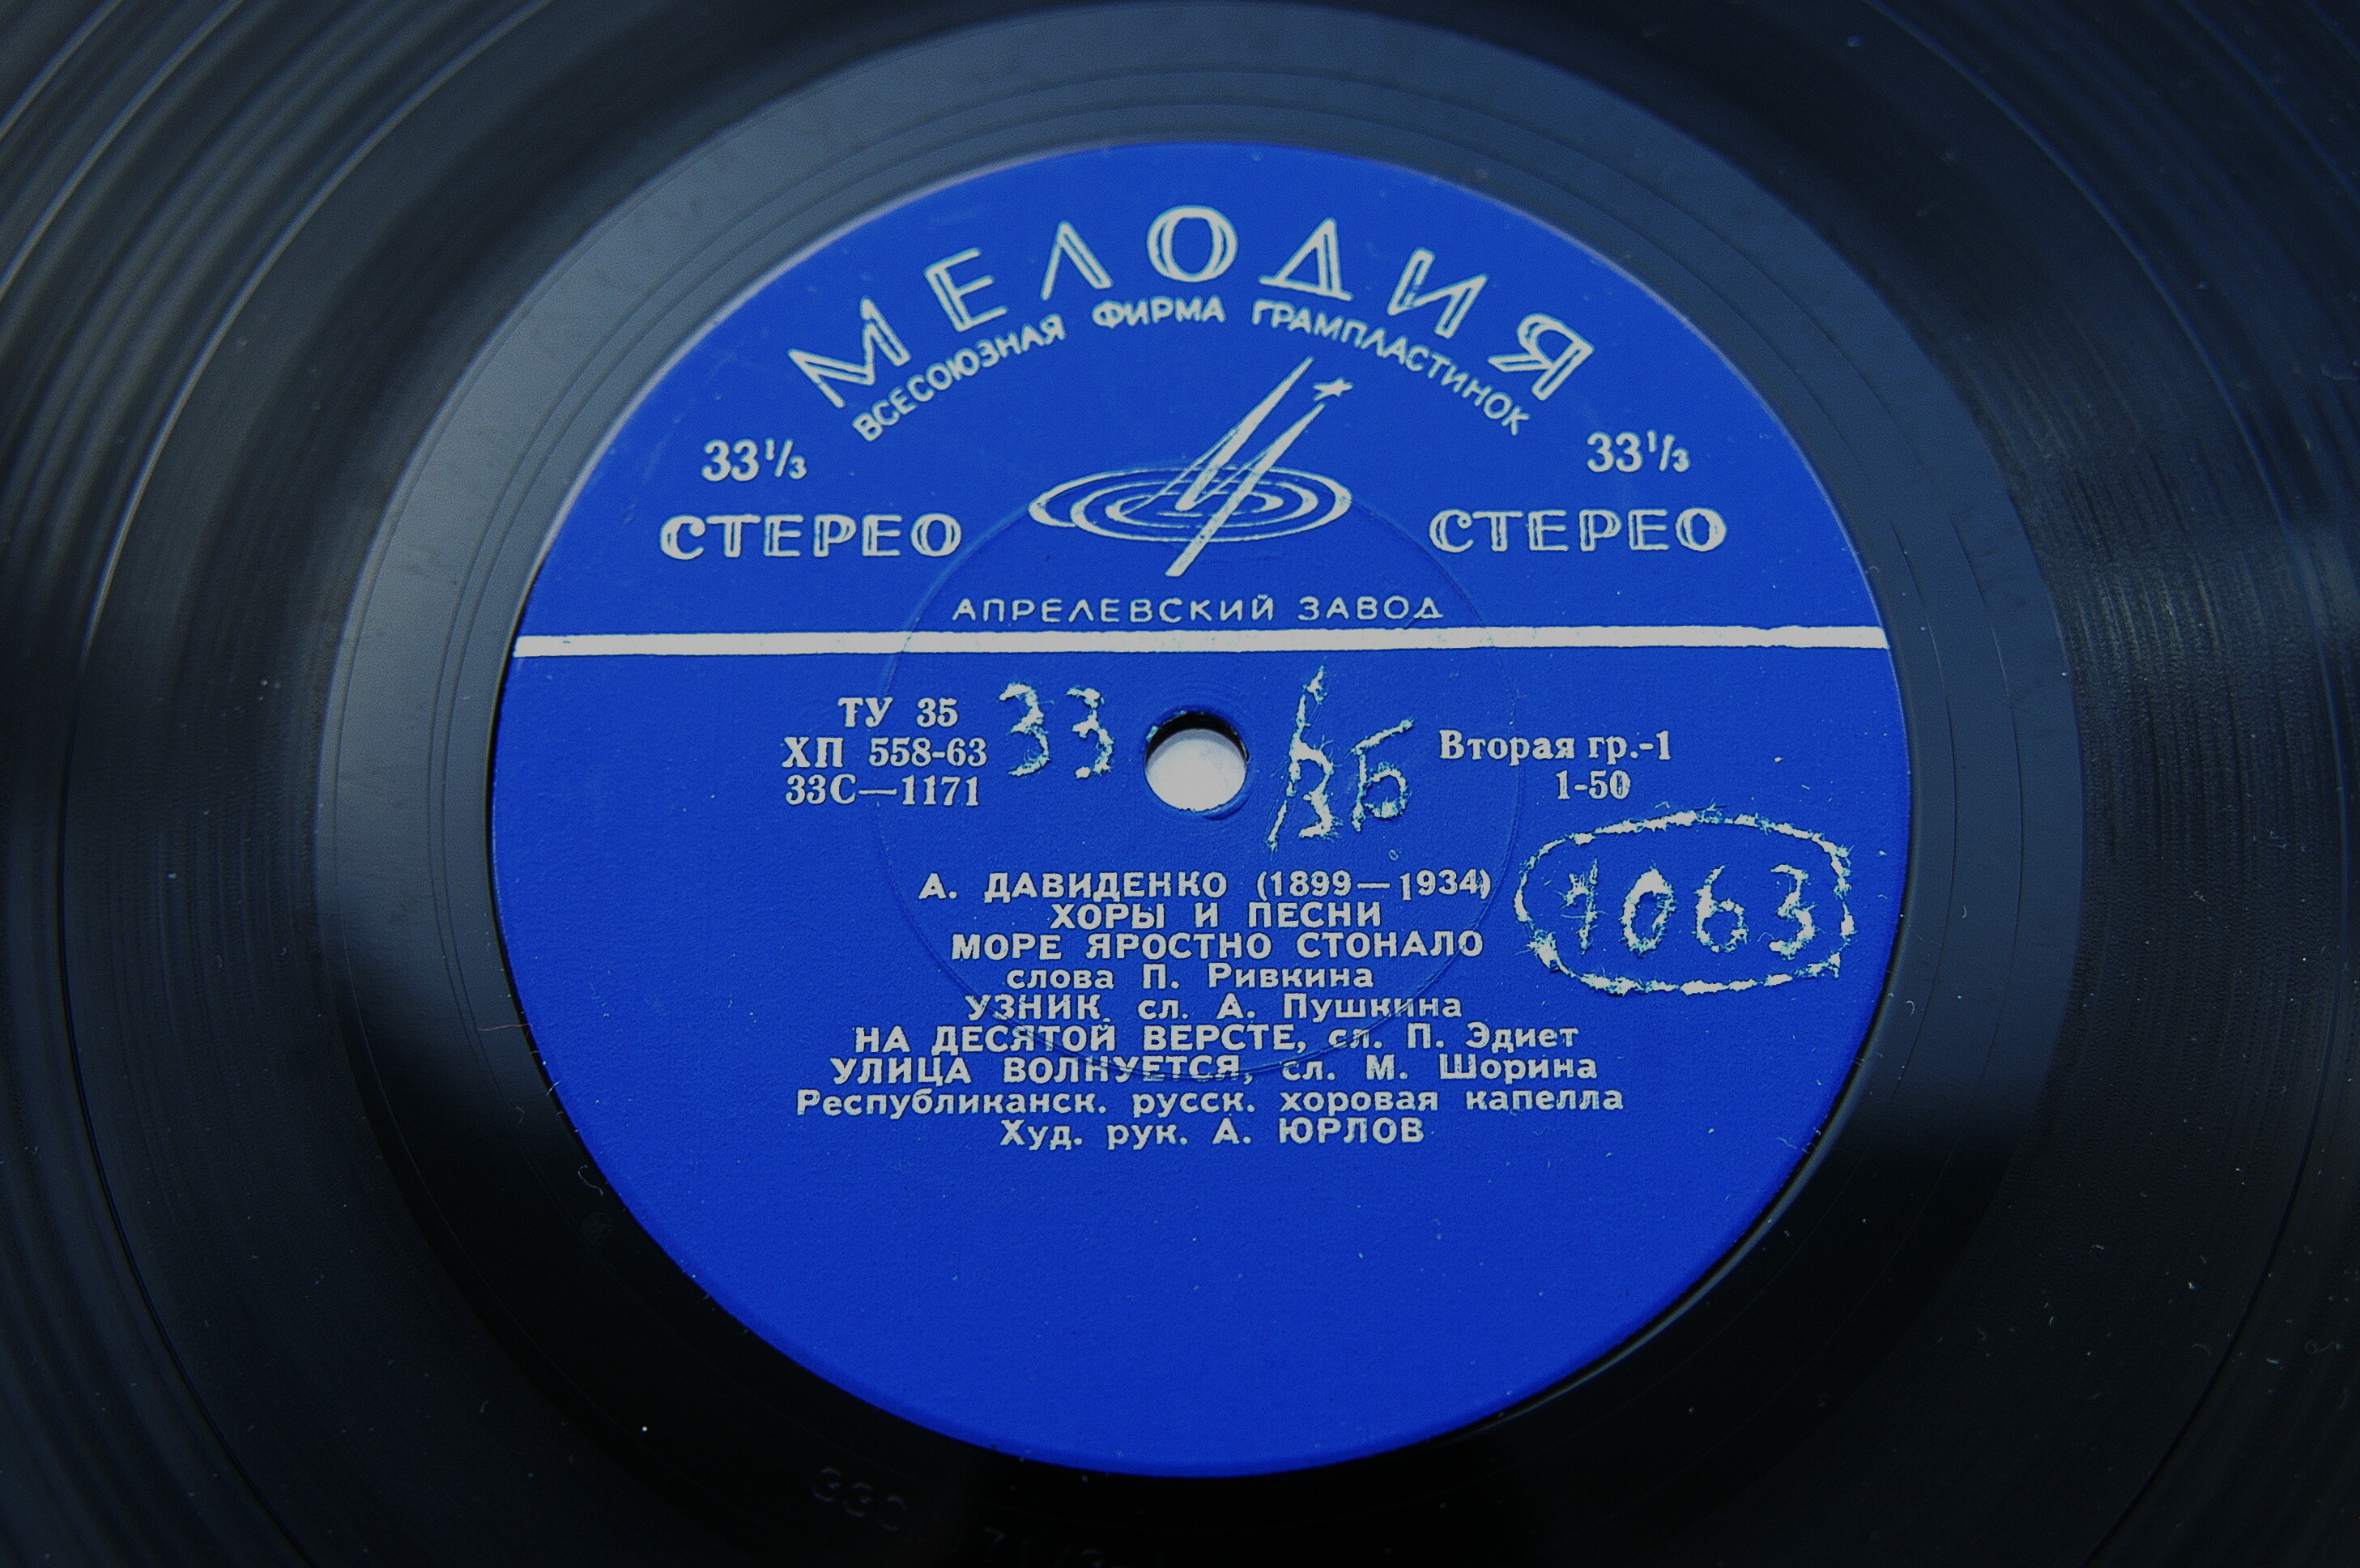 А. ДАВИДЕНКО (1899-1934) "Хоры и песни"